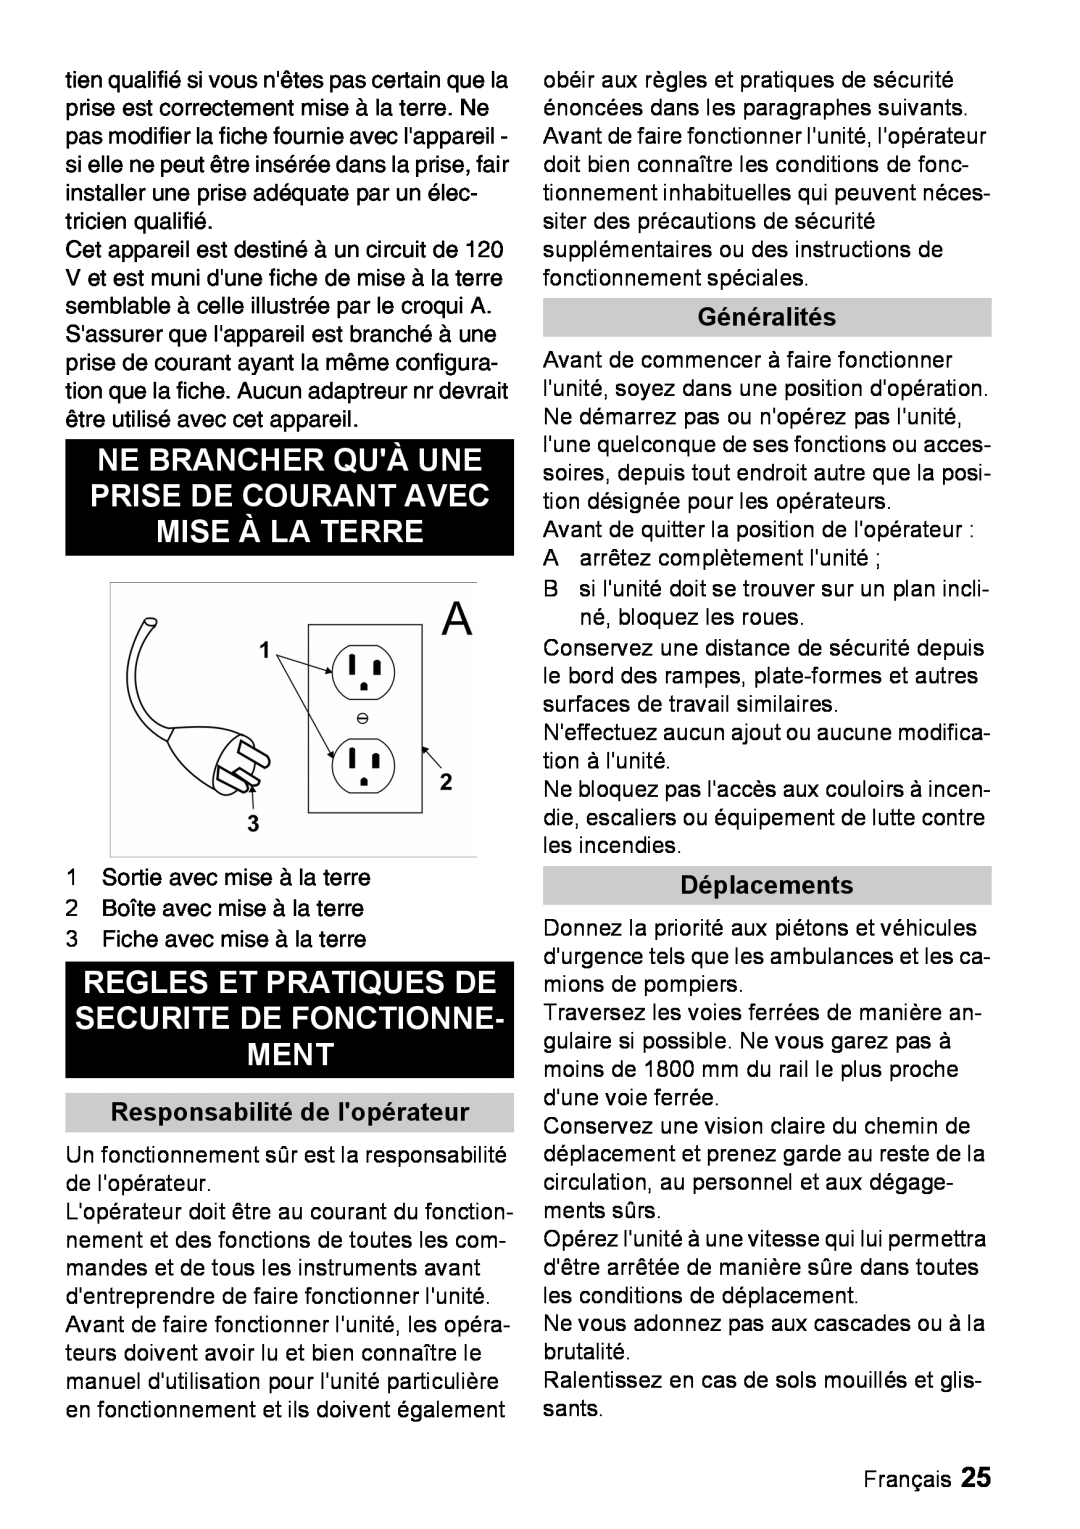 Windsor 22 SP manual Responsabilité de lopérateur, Généralités, Déplacements 